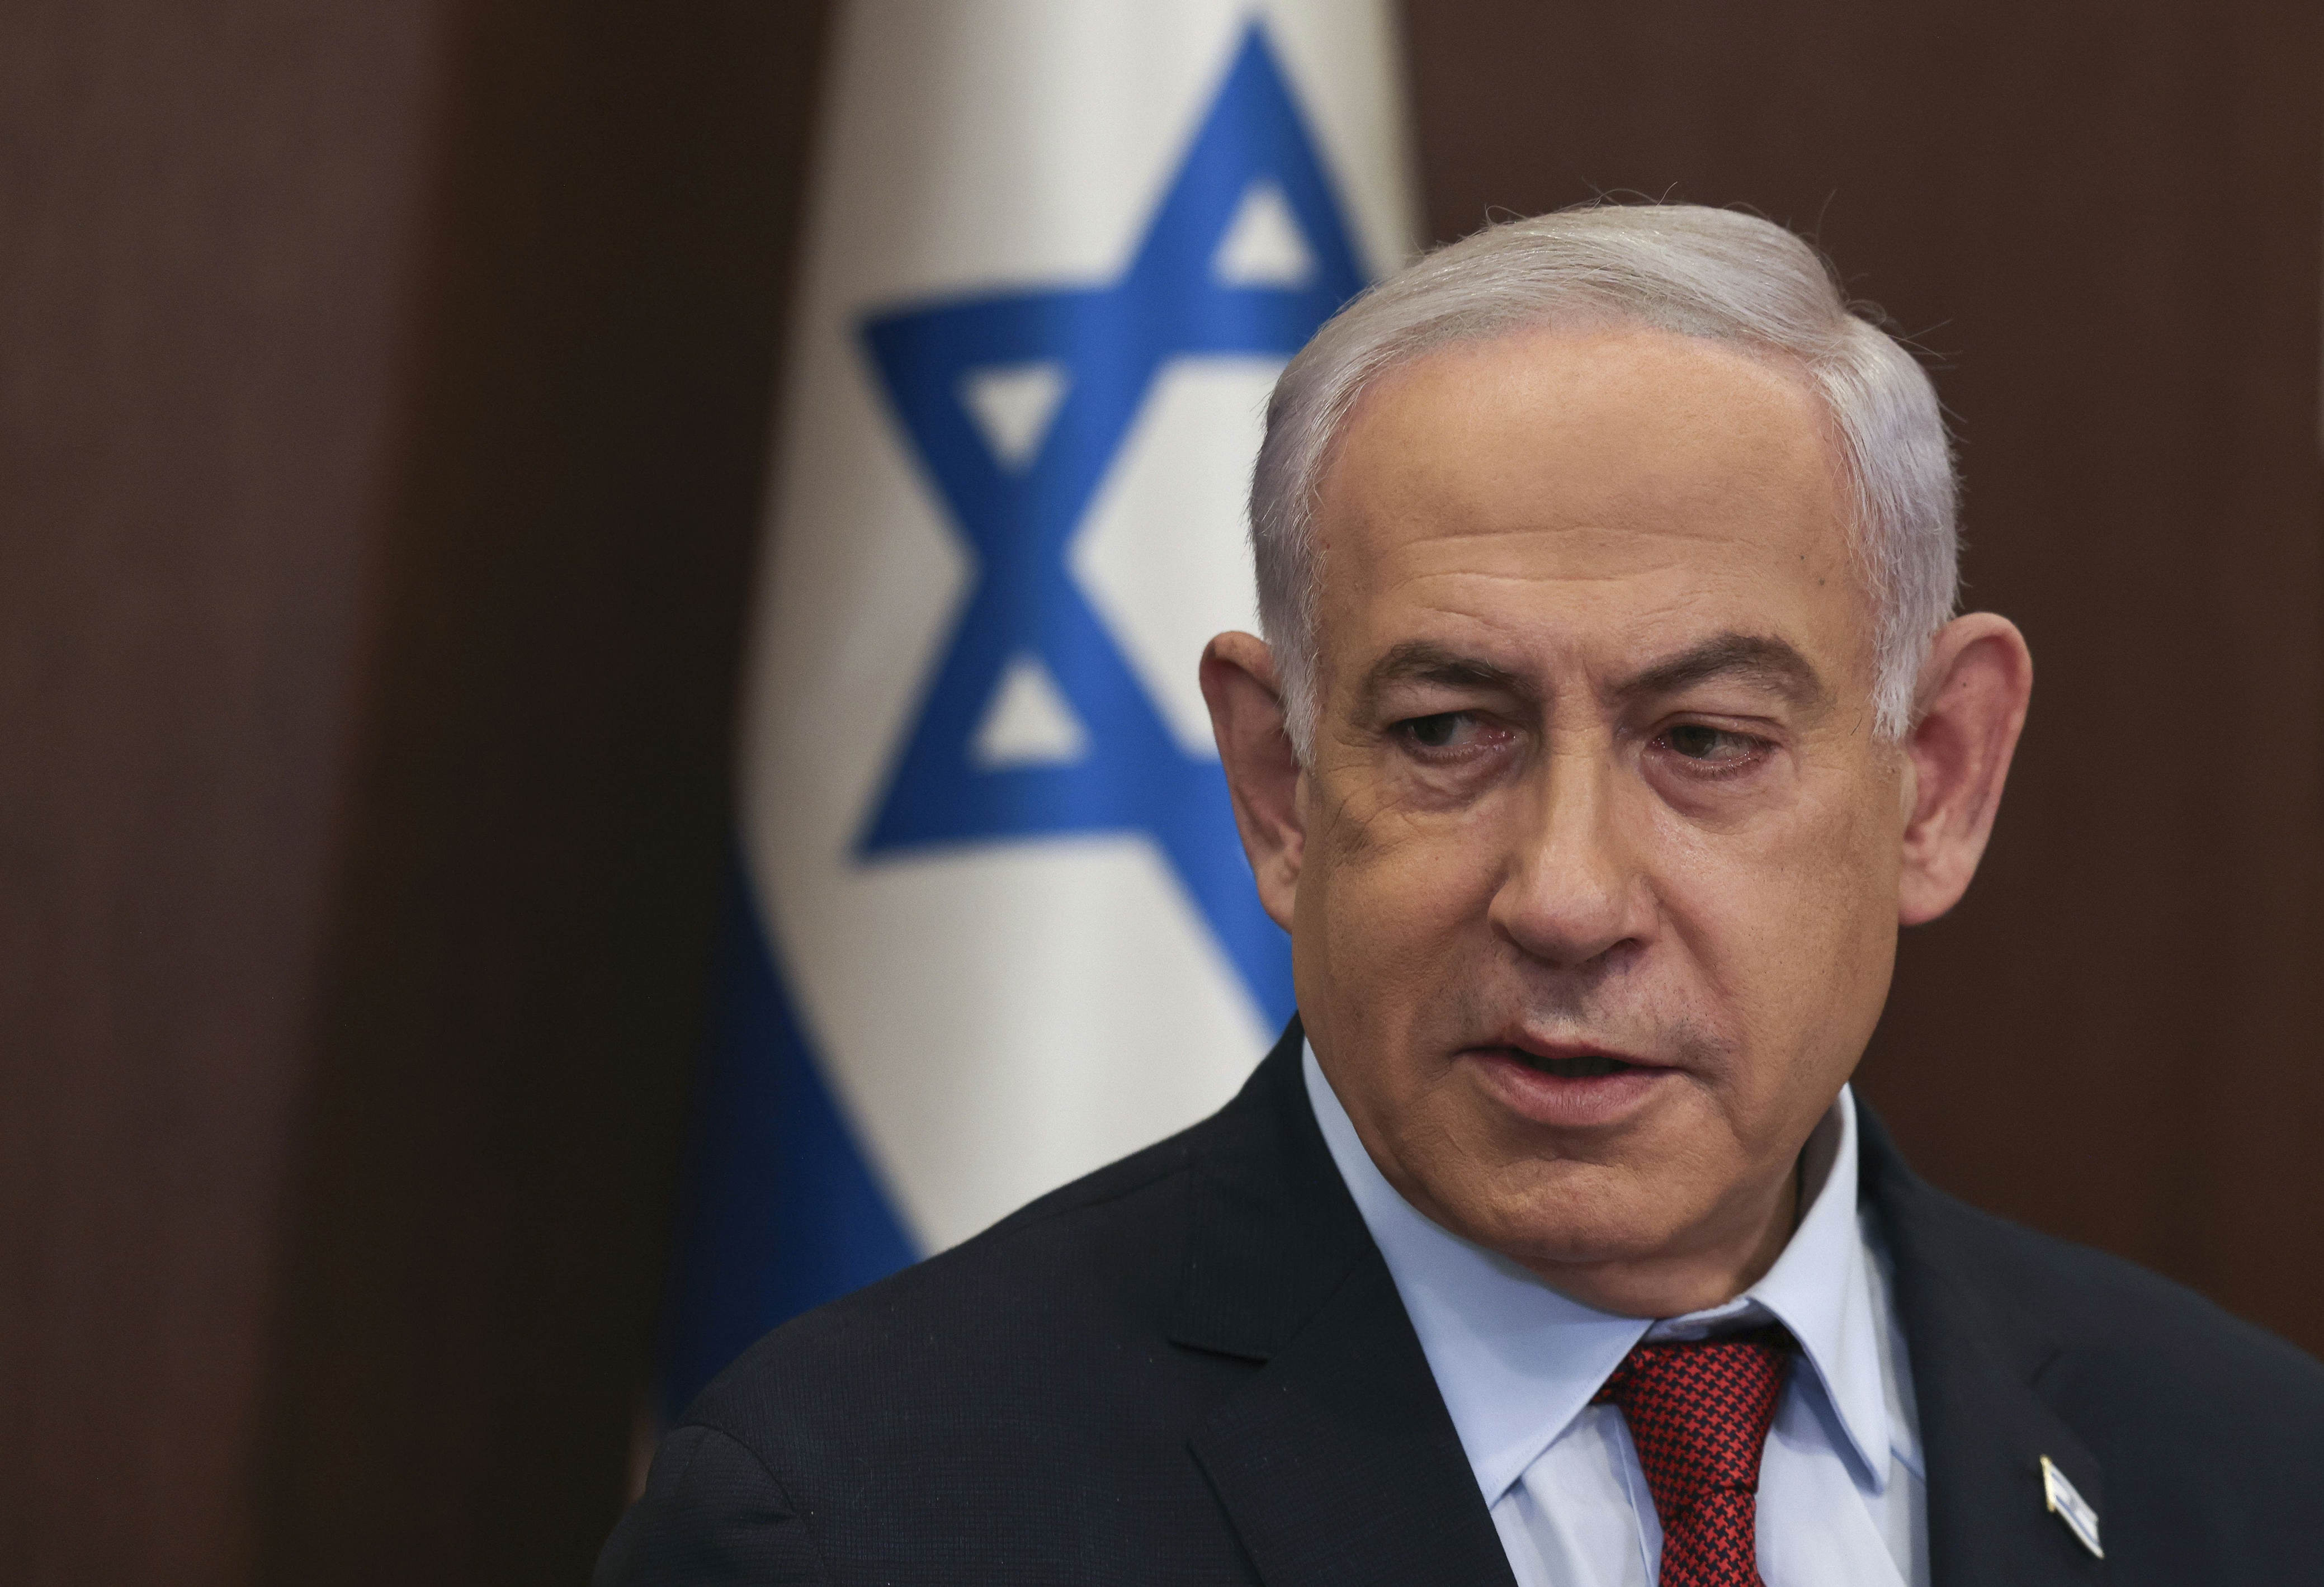 netanyahu lehnt eine zweistaatenlösung erneut öffentlich ab – und brüskiert damit biden